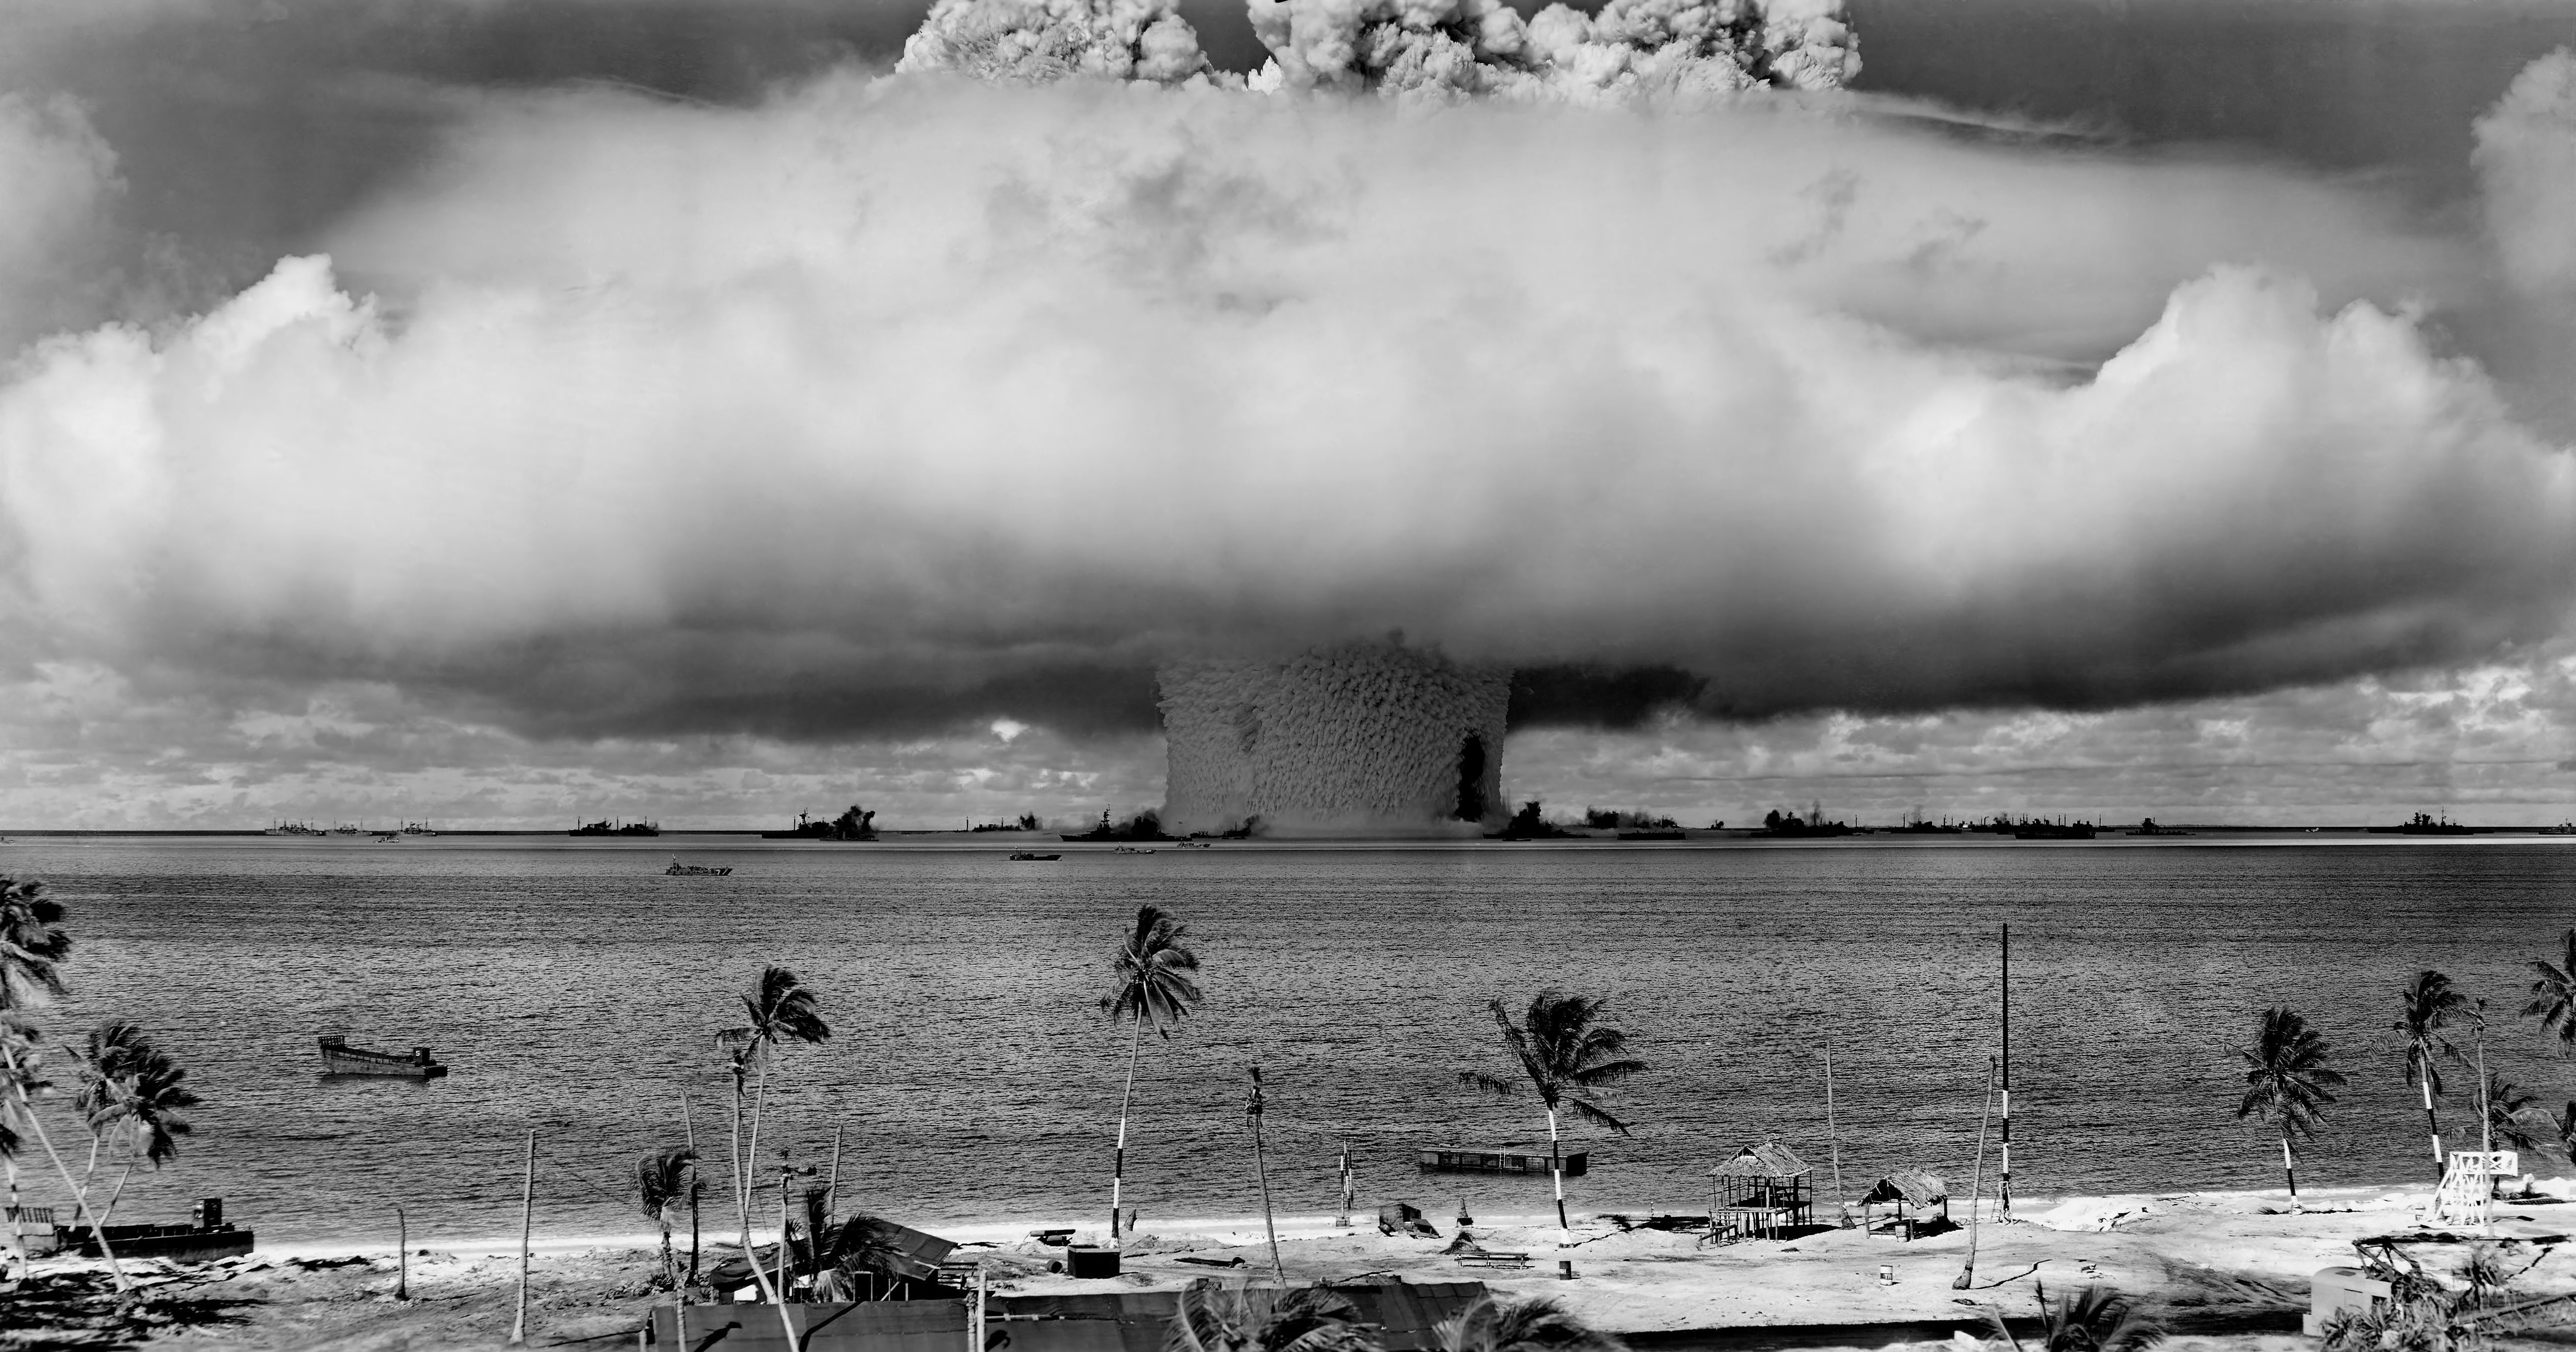 En 1962, la crise des missiles de Cuba aurait pu conduire à une apocalypse nucléaire. Le téléphone rouge a été installé après cet épisode pour permettre un meilleur dialogue entre les deux superpuissances. © United States Department of Defense, Wikimedia Commons, DP